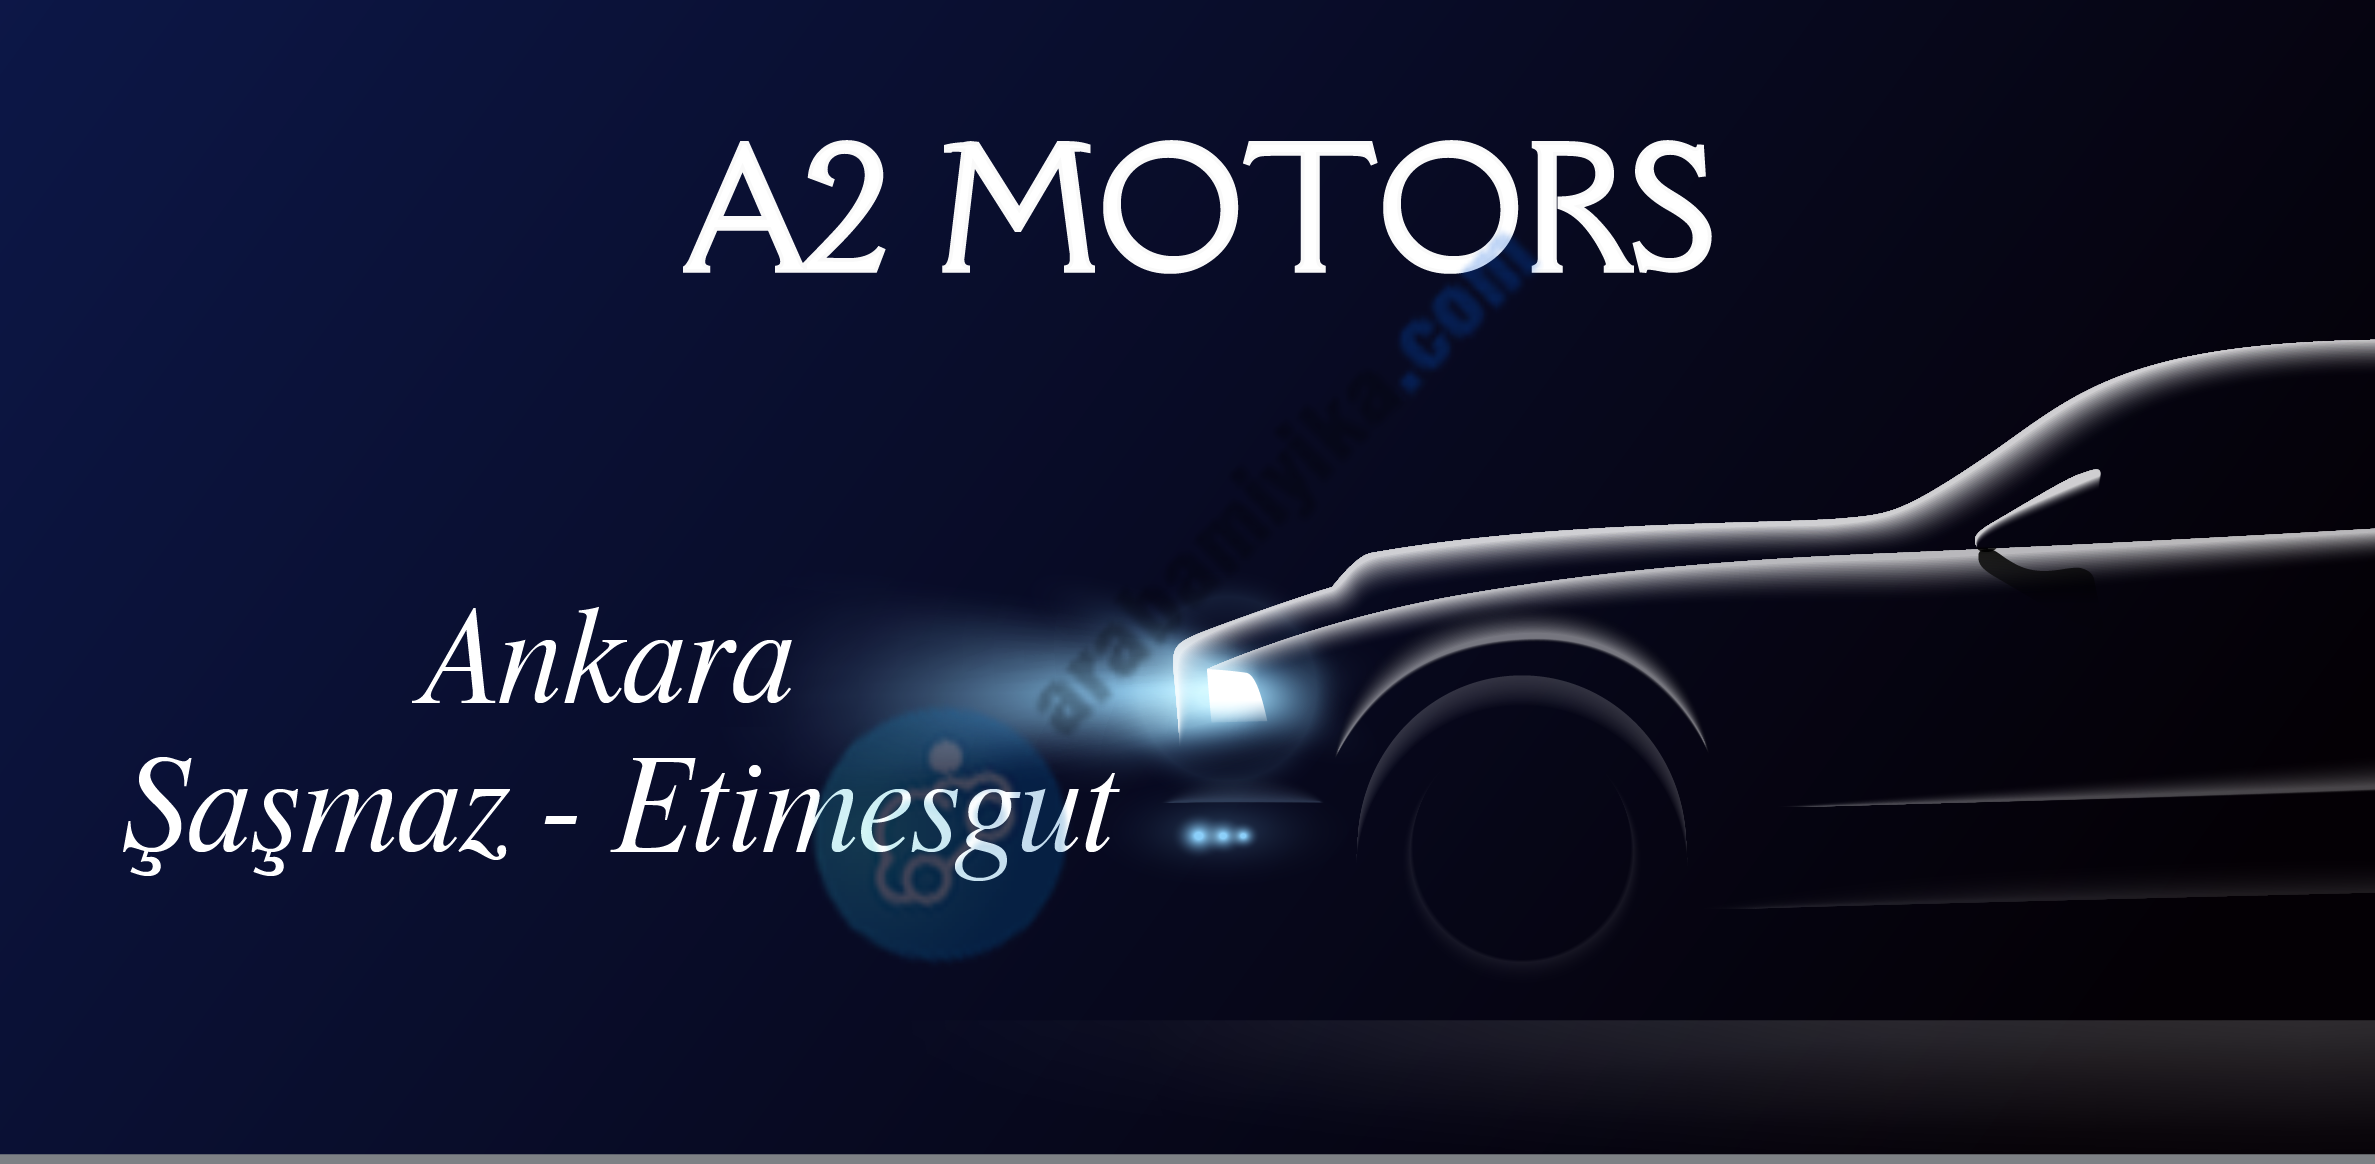 A2 Motors